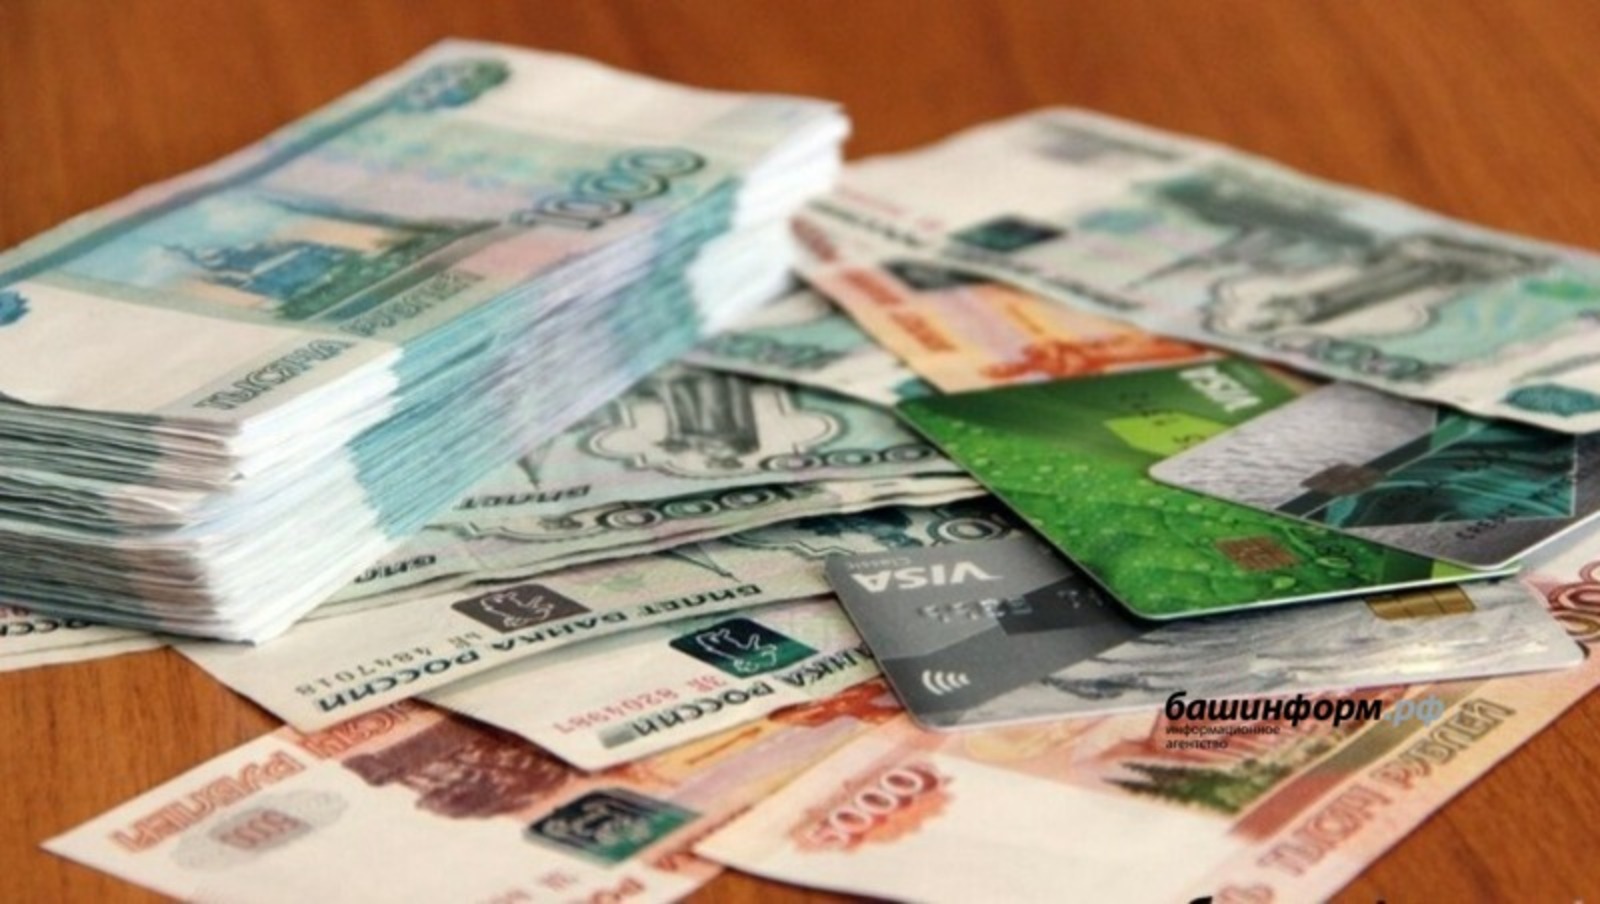 Россиян предупредили о новой мошеннической схеме списывания денег с карты